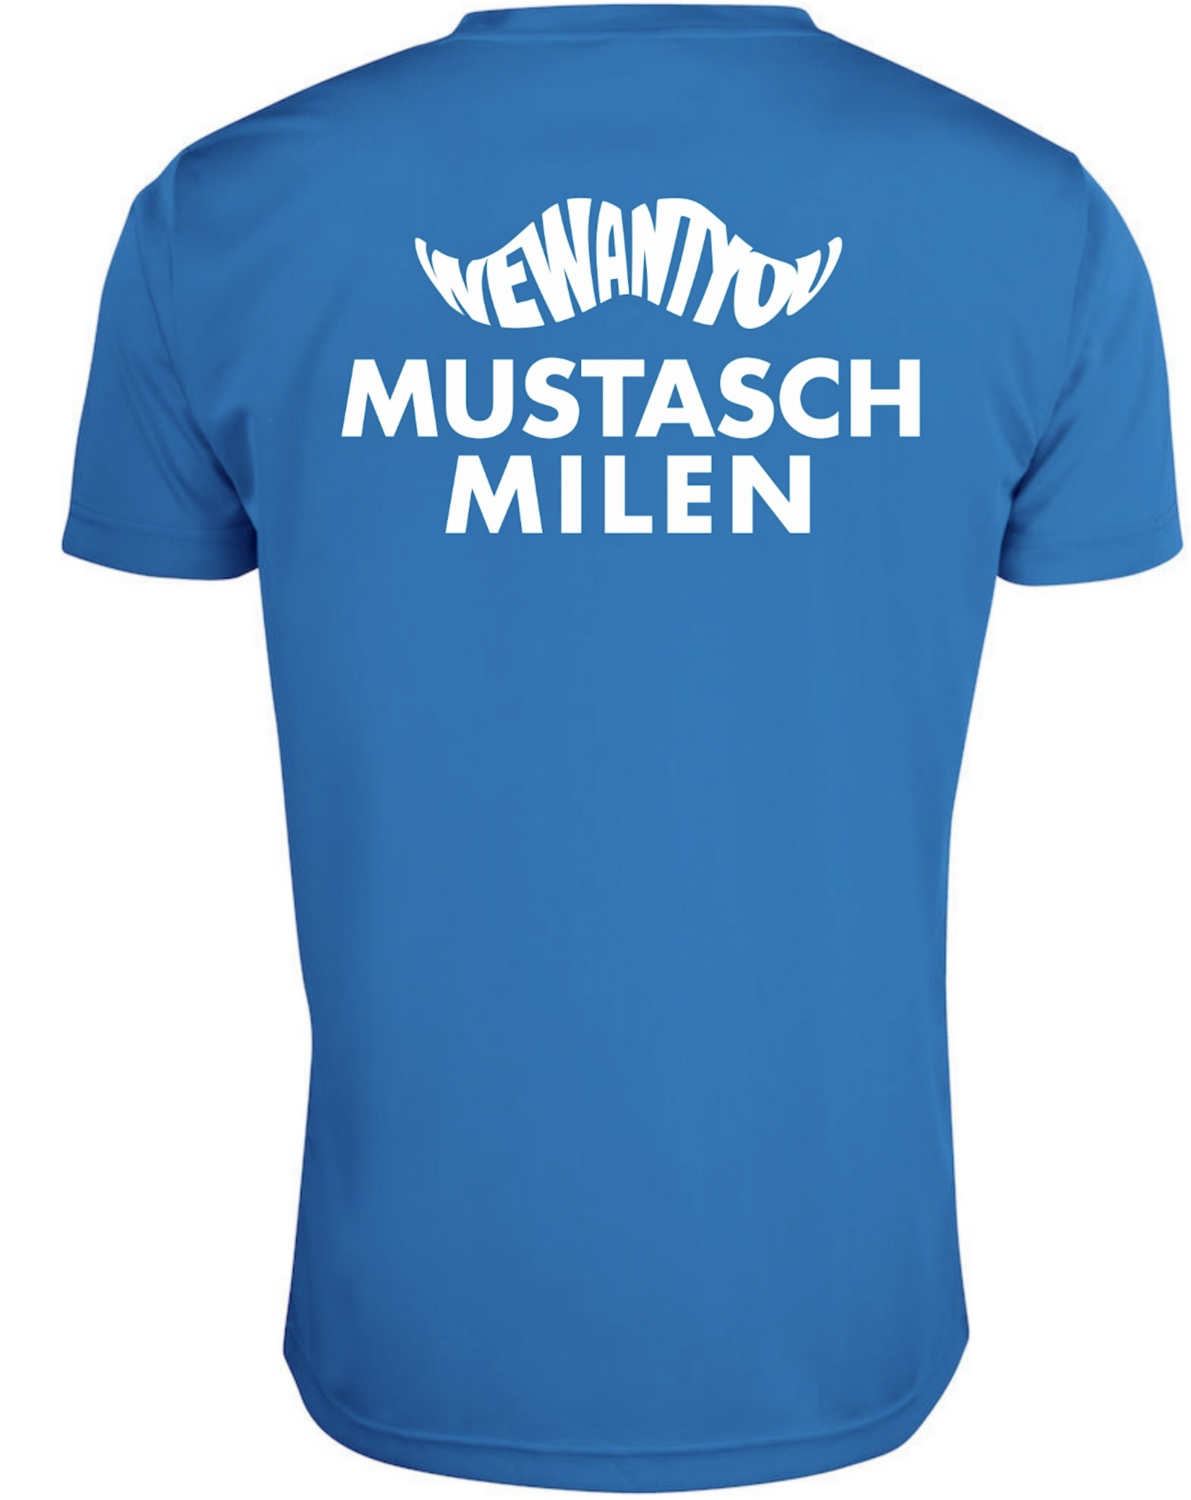 Mustaschmilen 2021 T-shirt